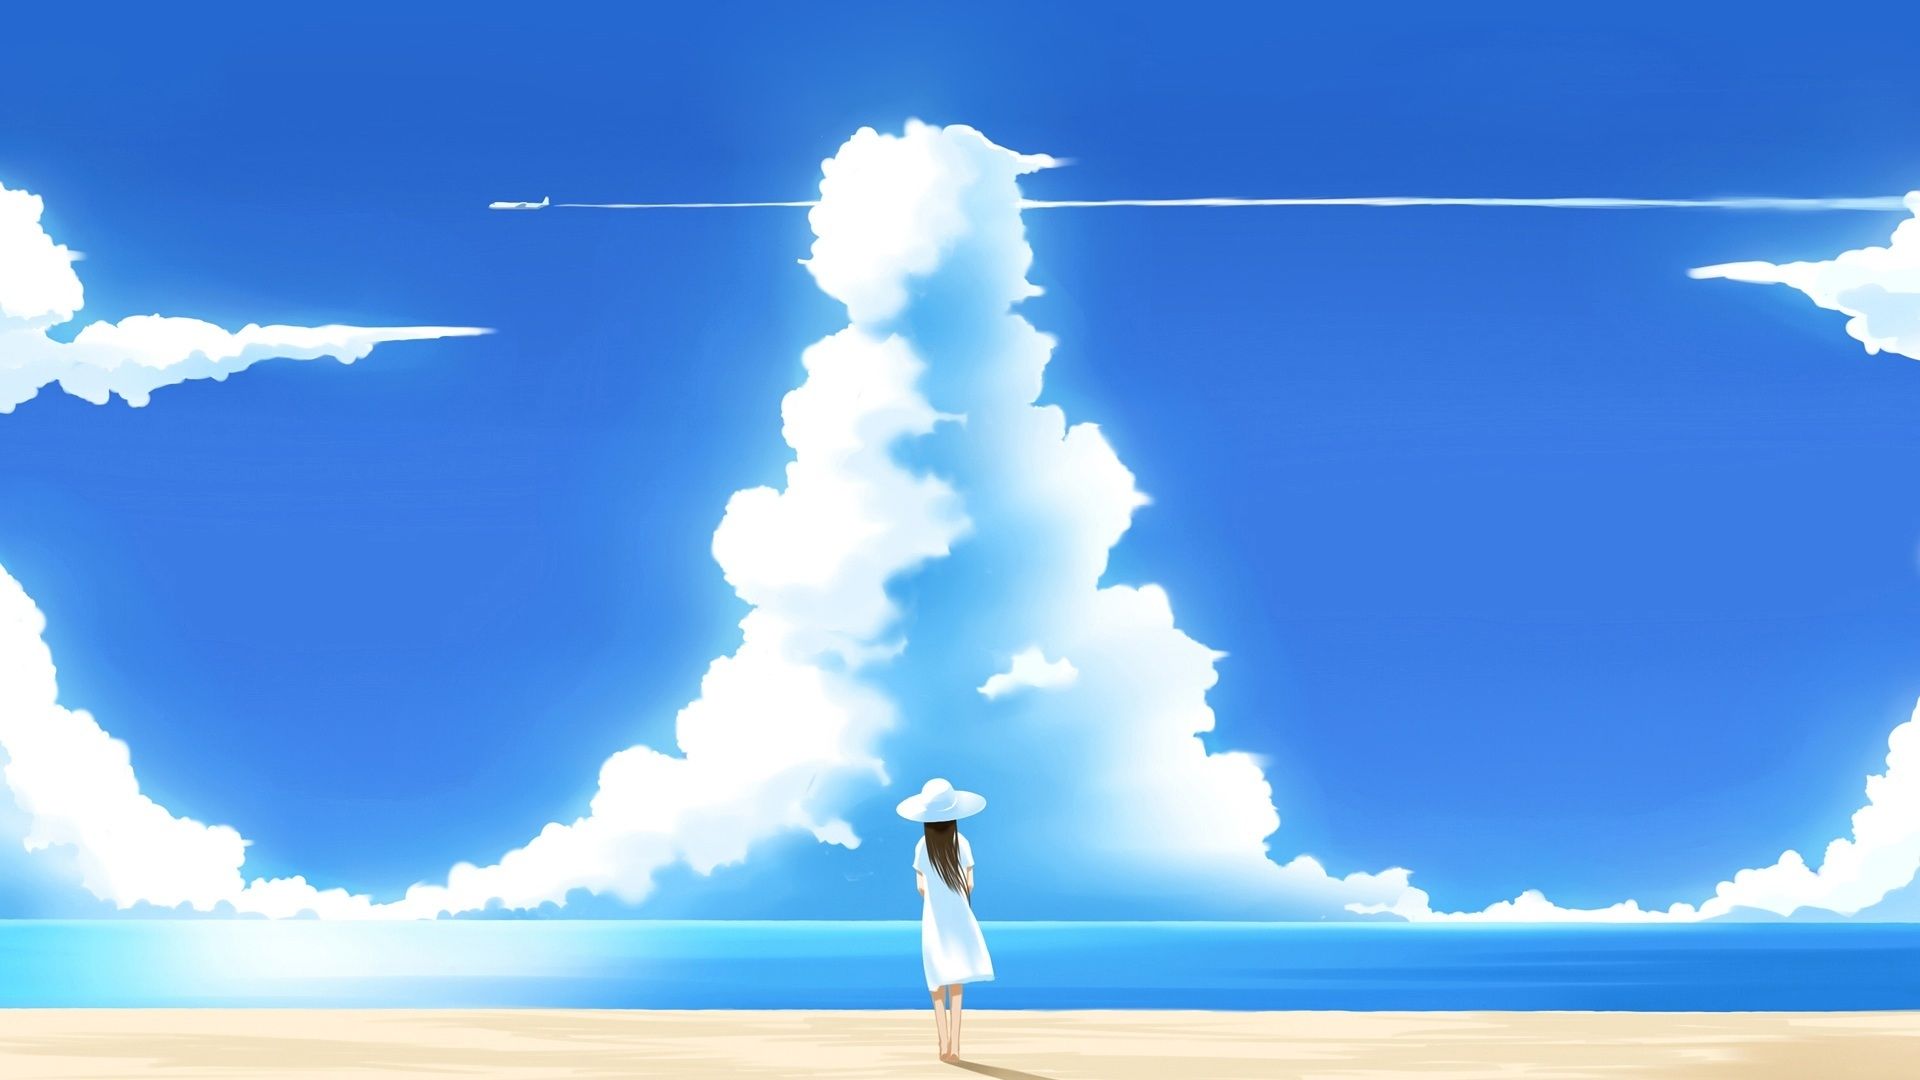 Anime landscape / Ocean / Sky / Wallpaper Engine - YouTube